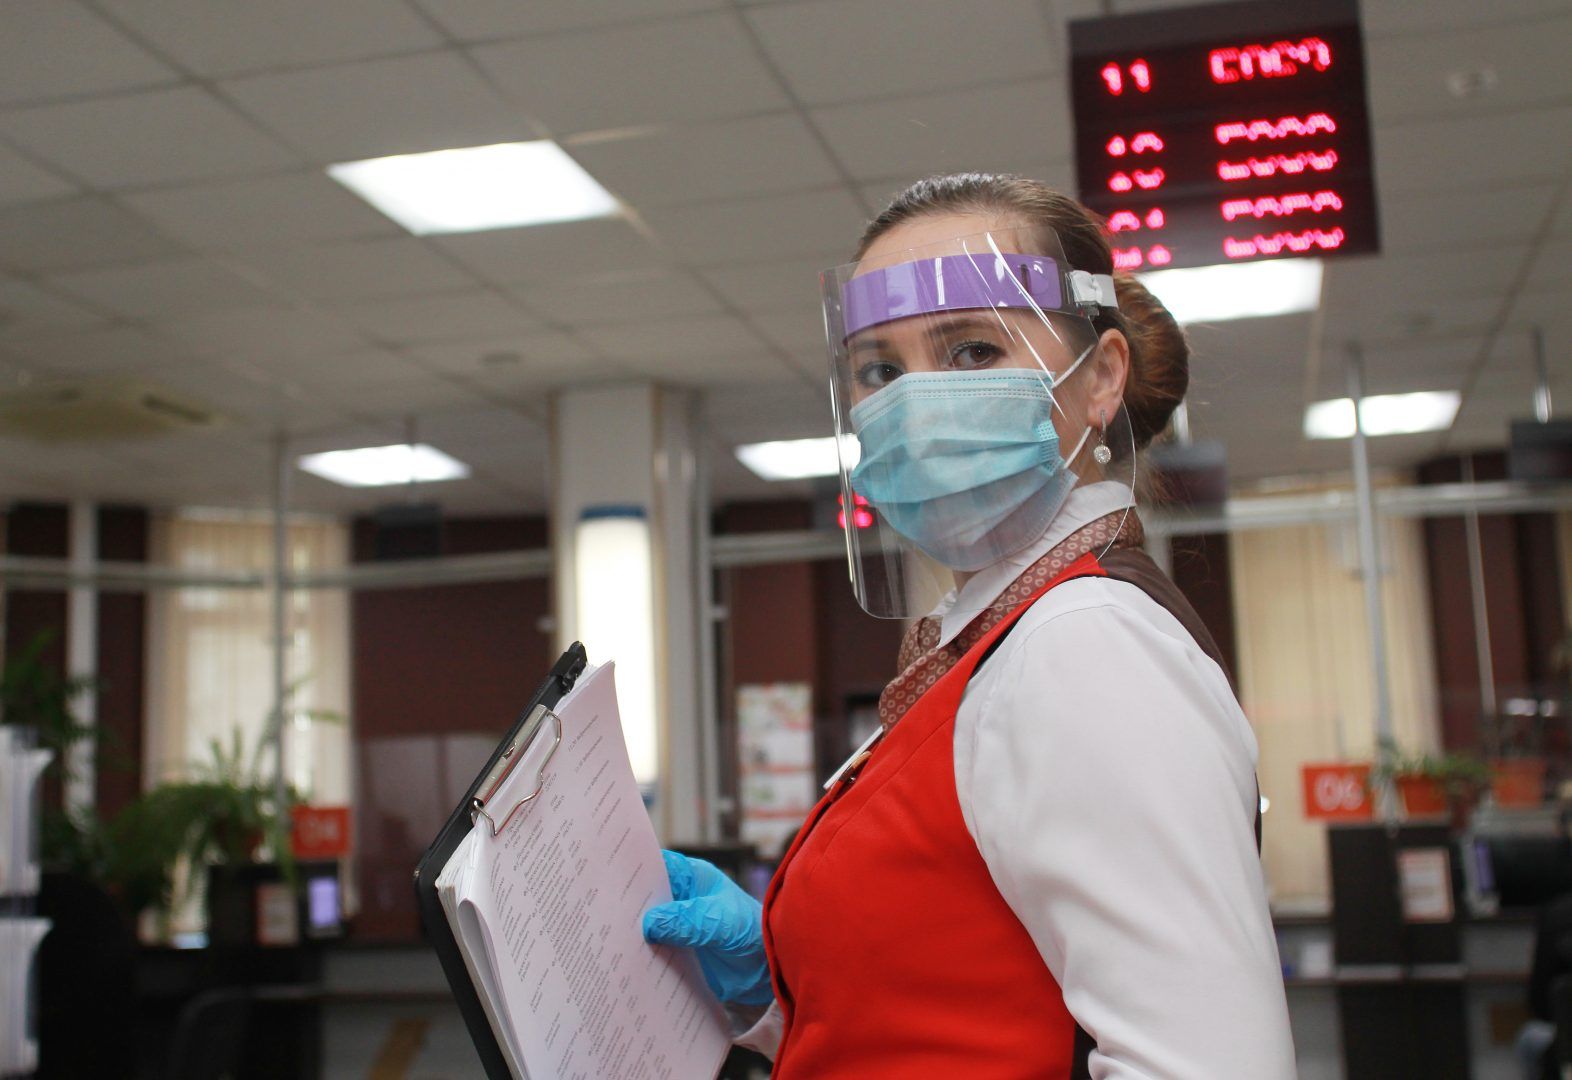 Центры госуслуг вновь принимают посетителей. Фото: Наталия Нечаева